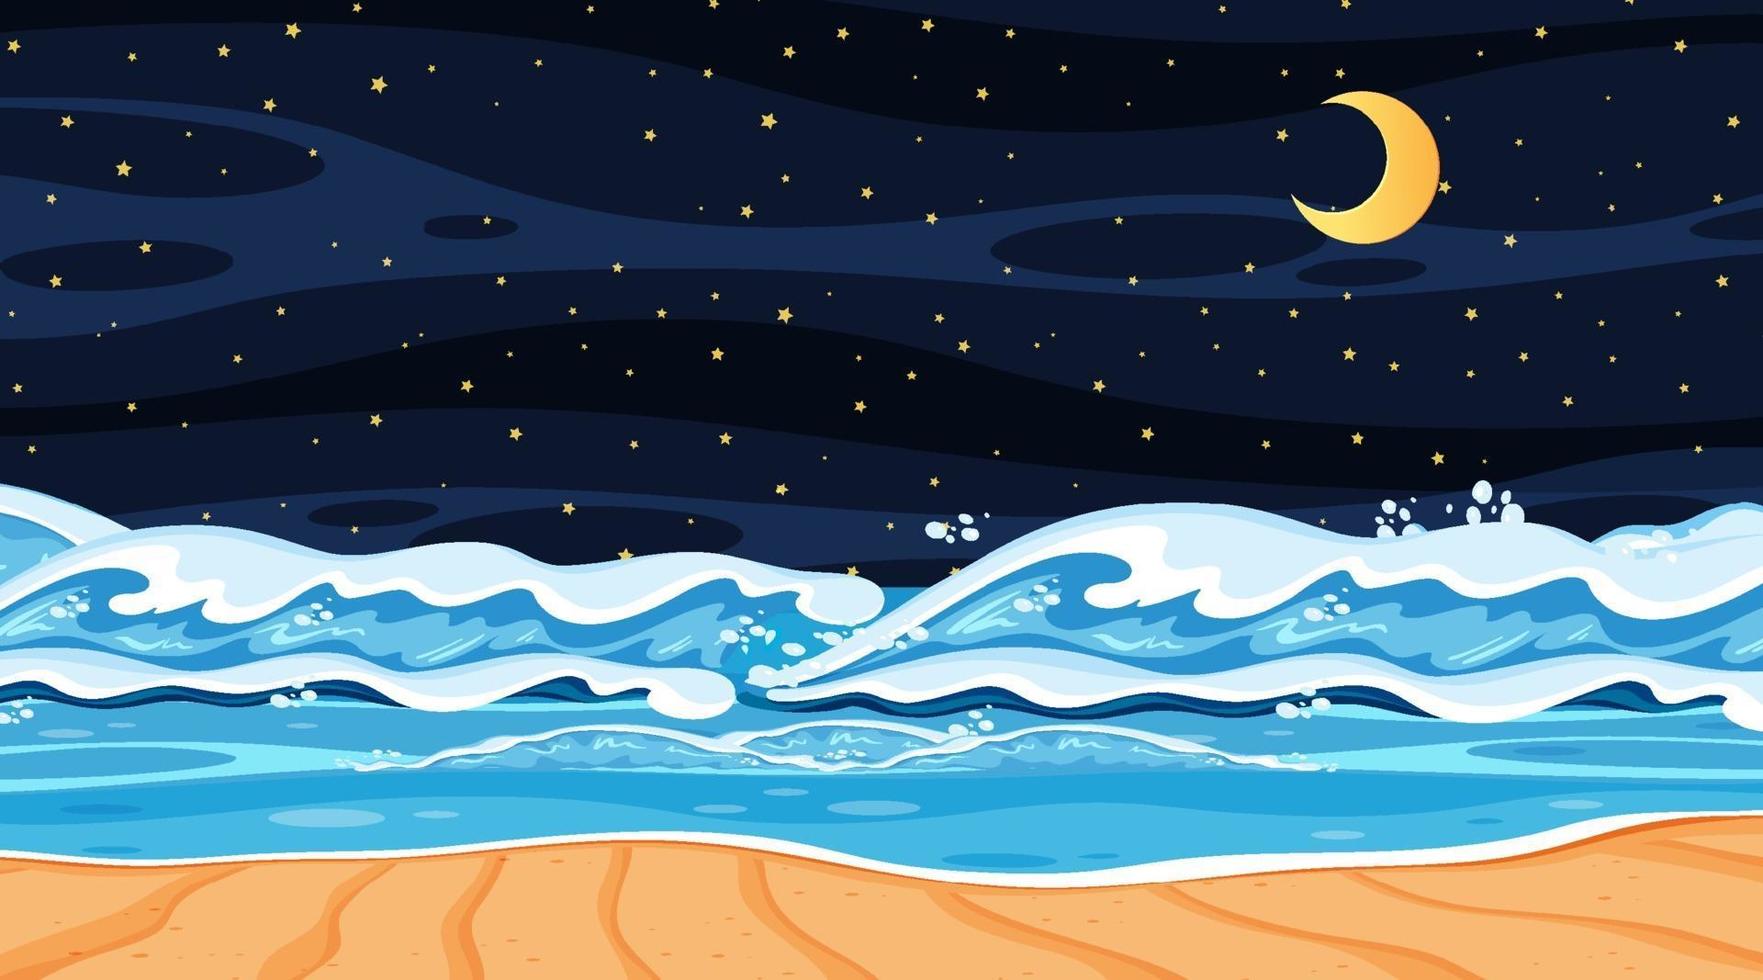 paisaje de playa en la escena nocturna con olas del mar vector